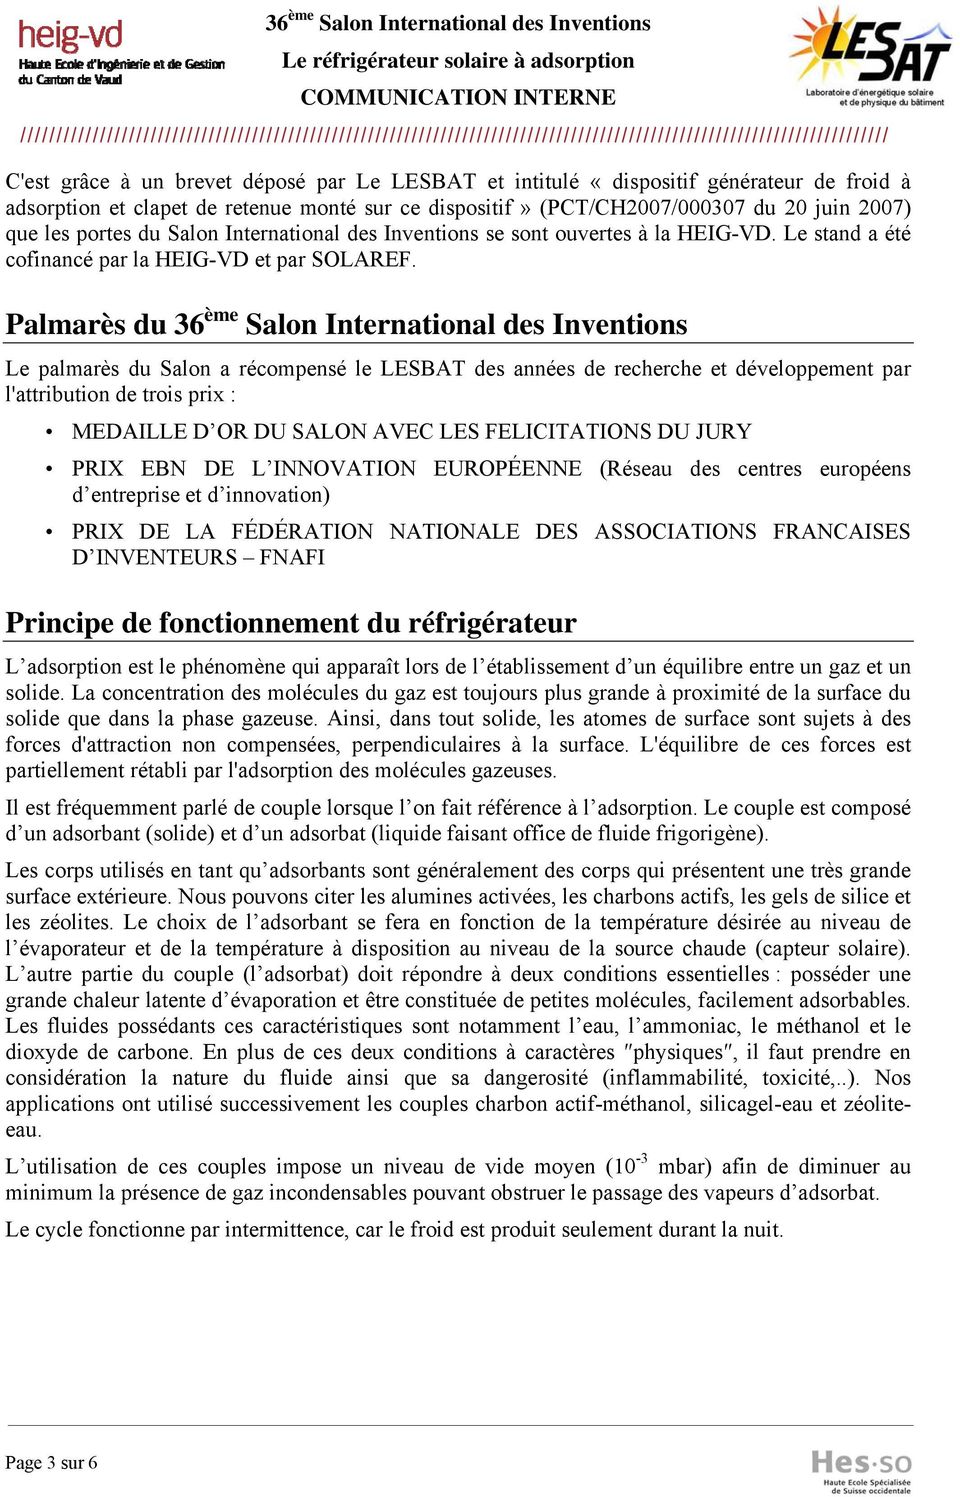 Palmarès du 36 ème Salon International des Inventions Le palmarès du Salon a récompensé le LESBAT des années de recherche et développement par l'attribution de trois prix : MEDAILLE D OR DU SALON